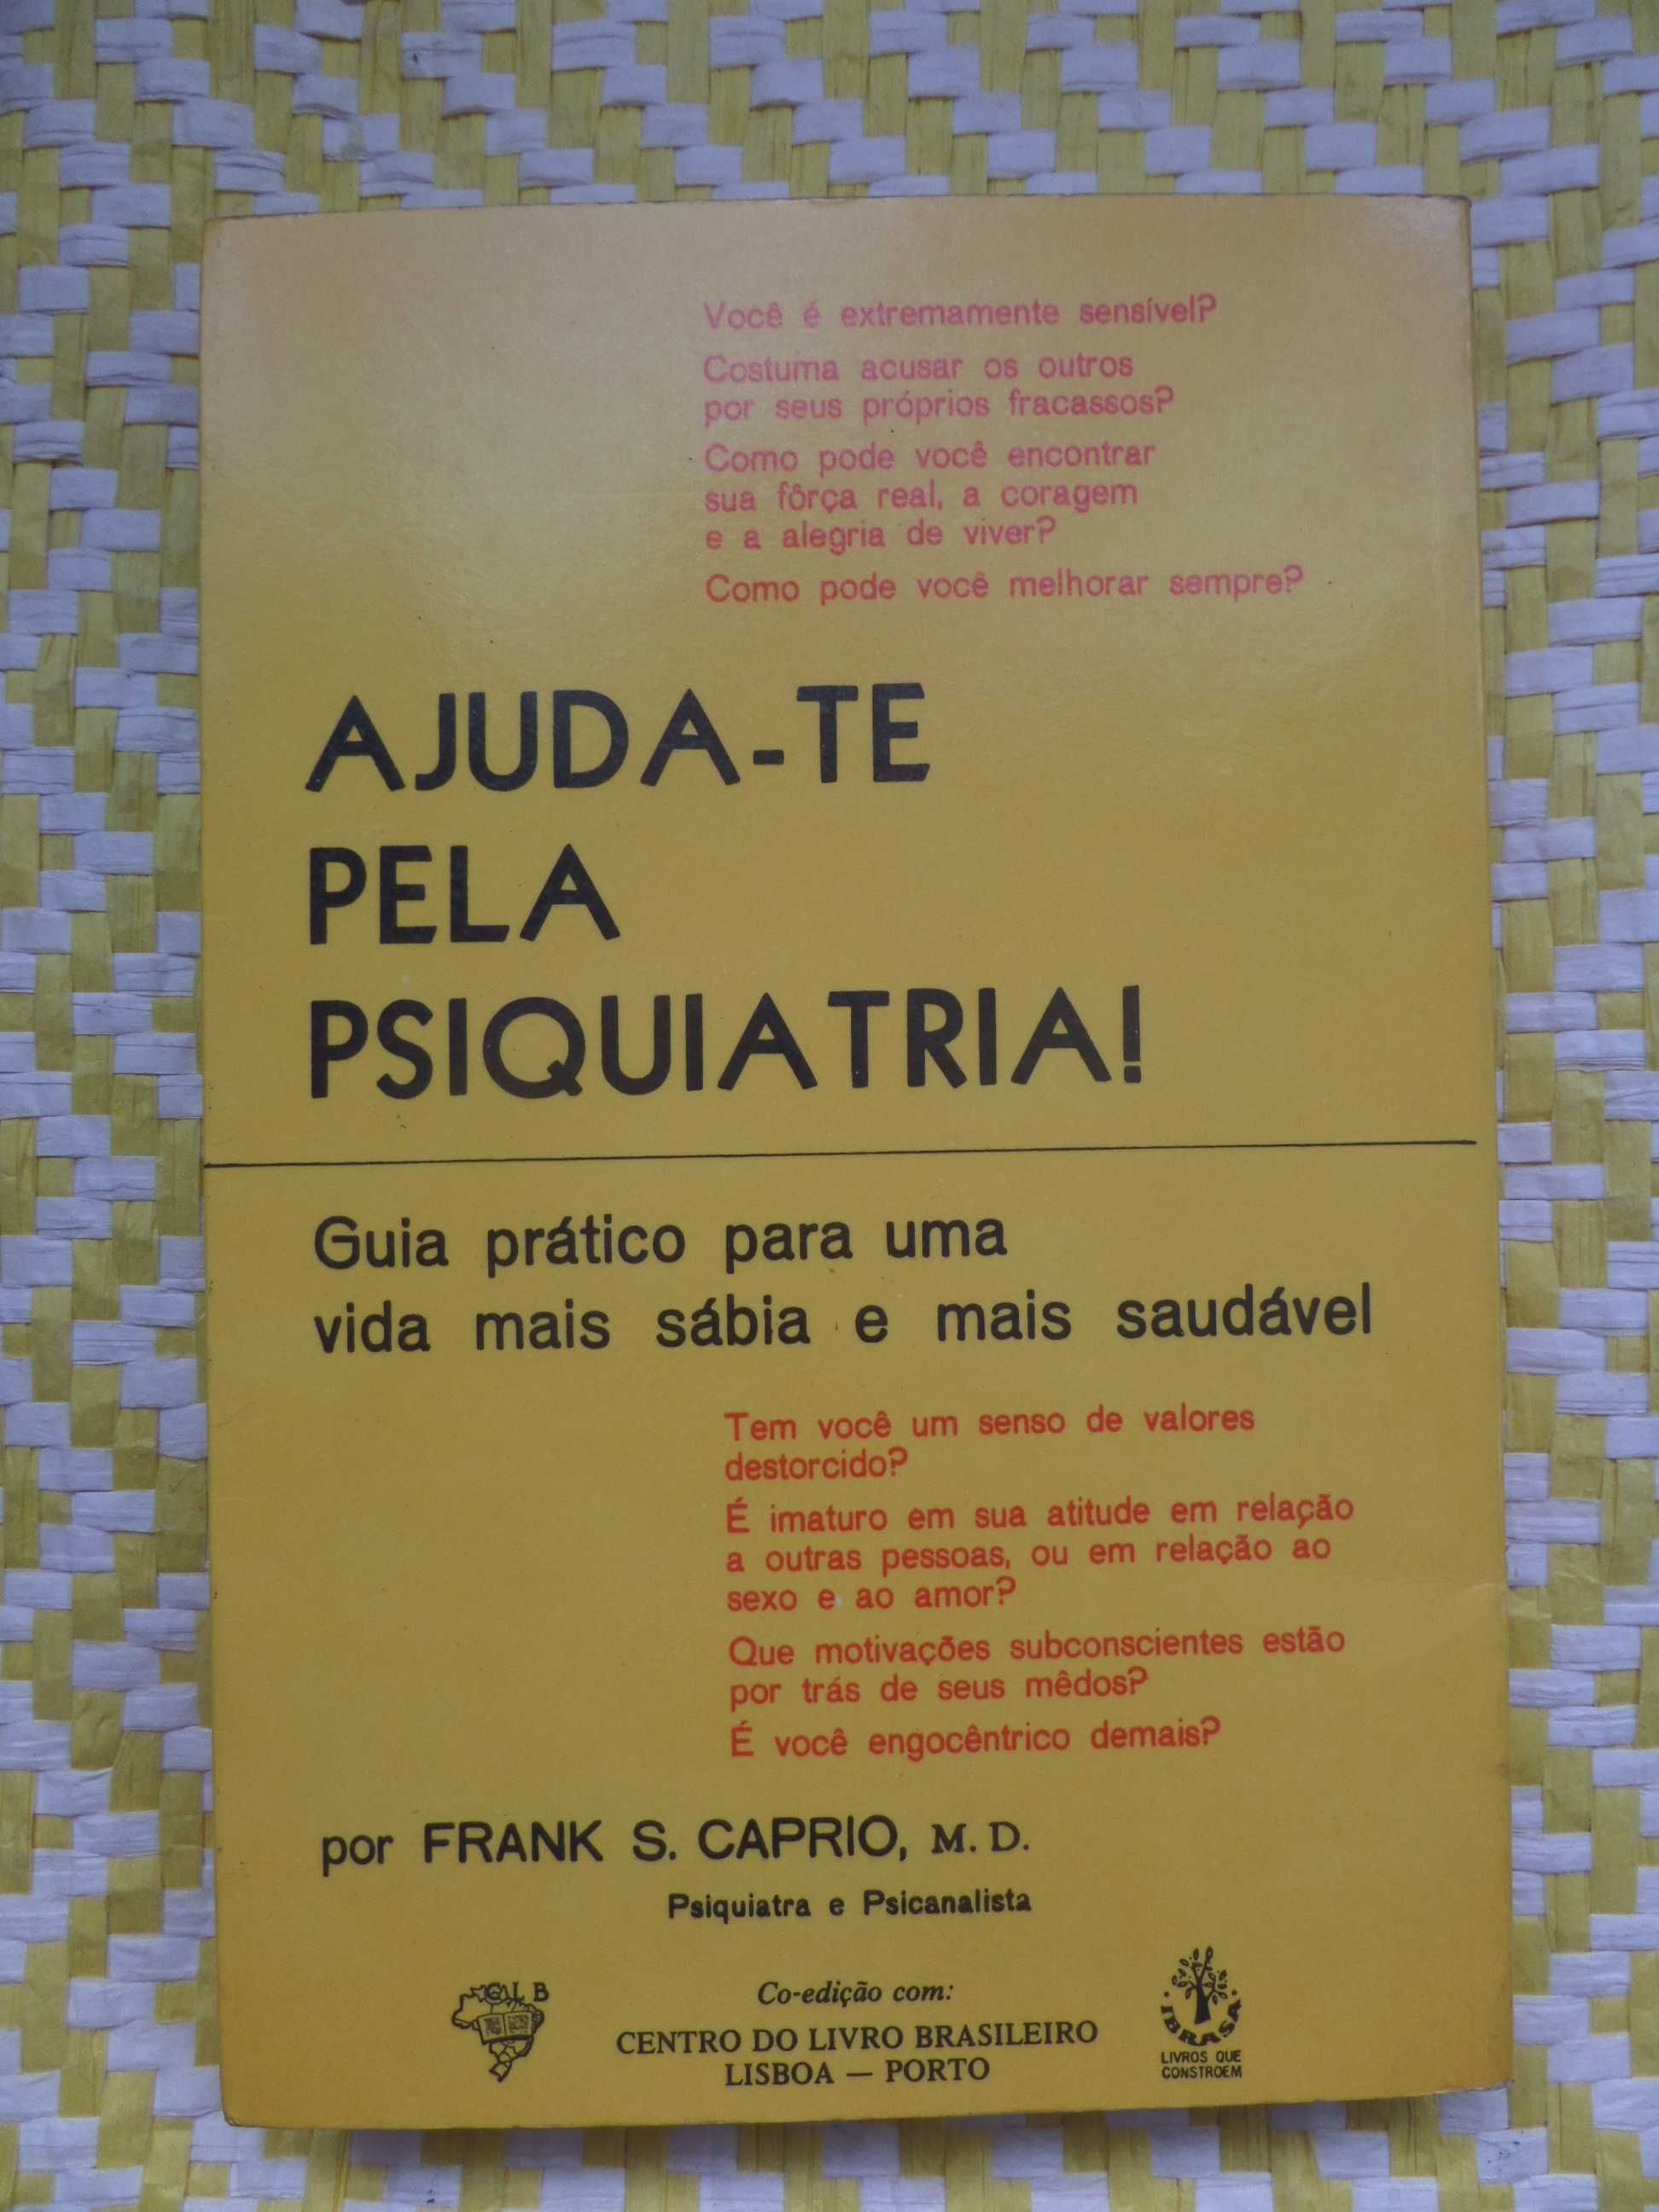 AJUDA-TE PELA PSIQUIATRIA –
 Frank S. Caprio 
Guia prático